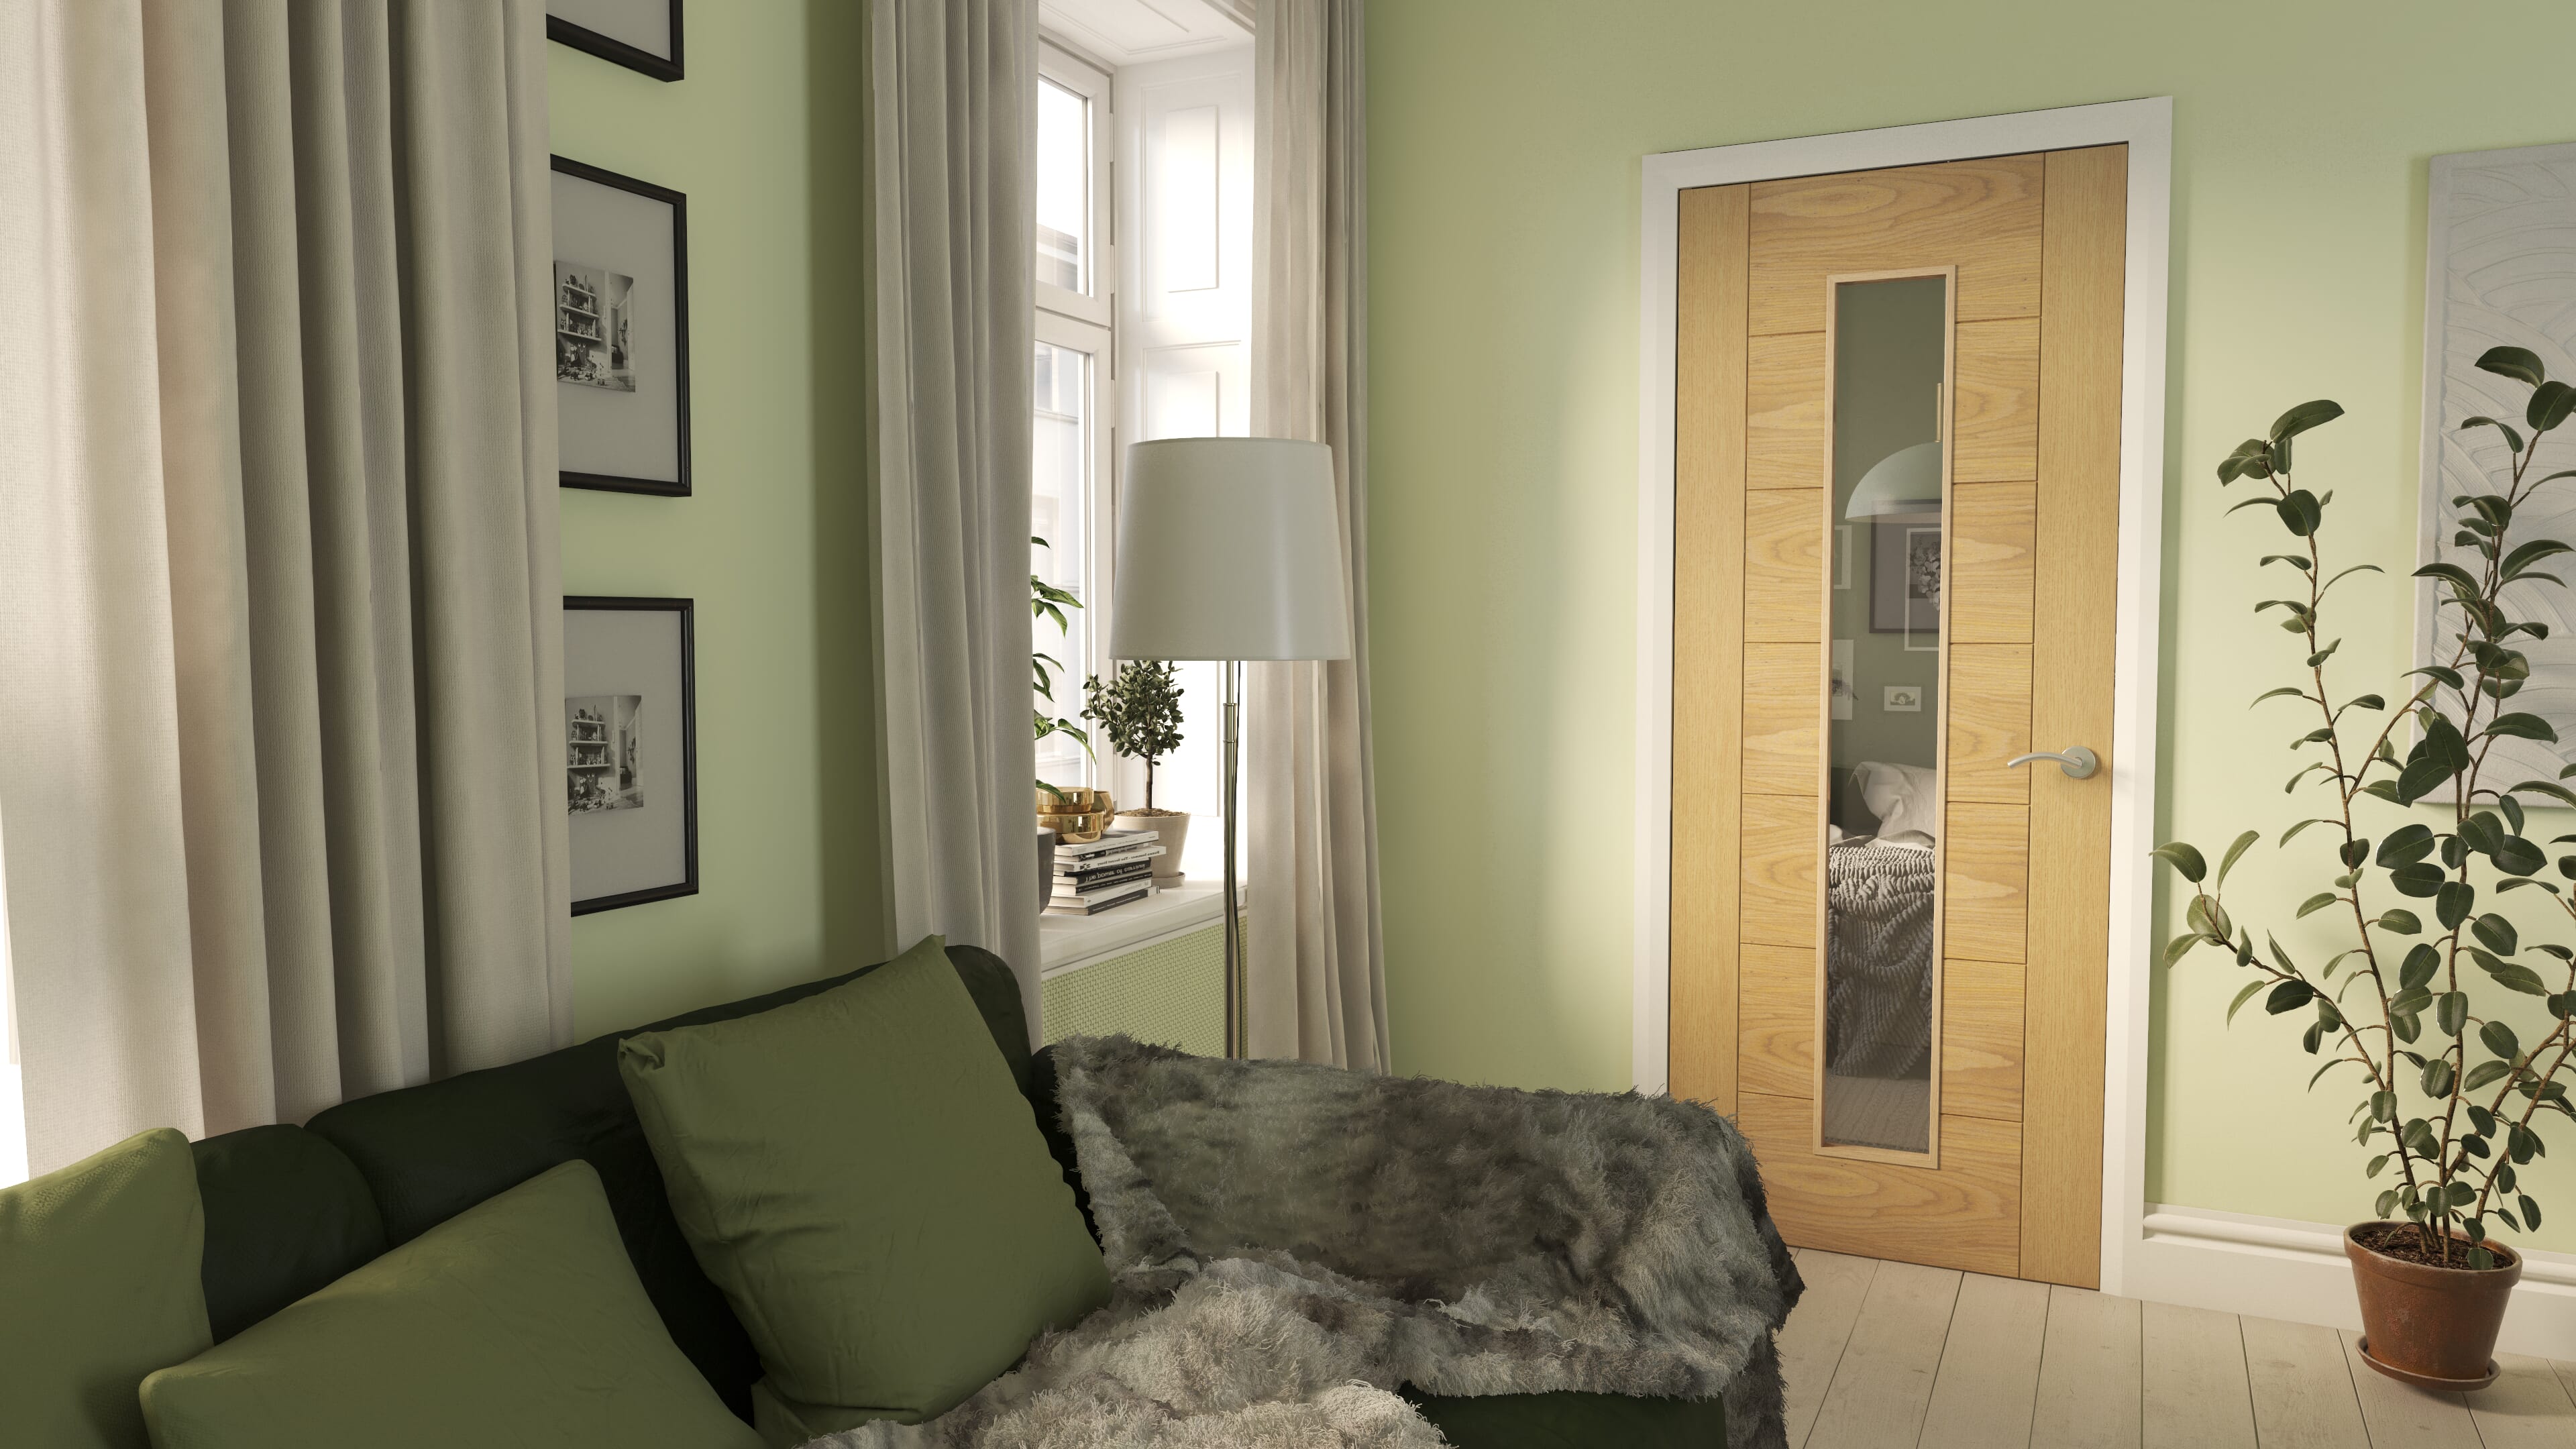 Internal Doors: Oak, Solid Core, Panel & Glazed Interior Doors